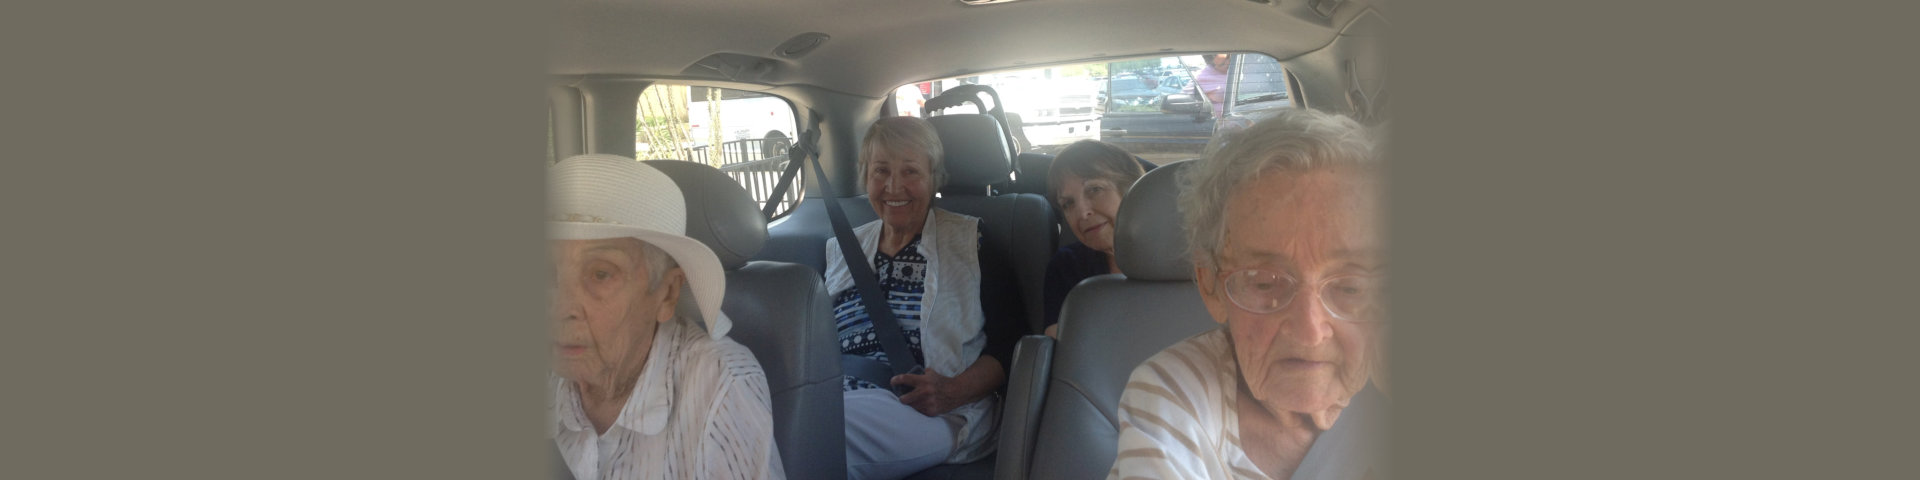 group of seniors inside the car